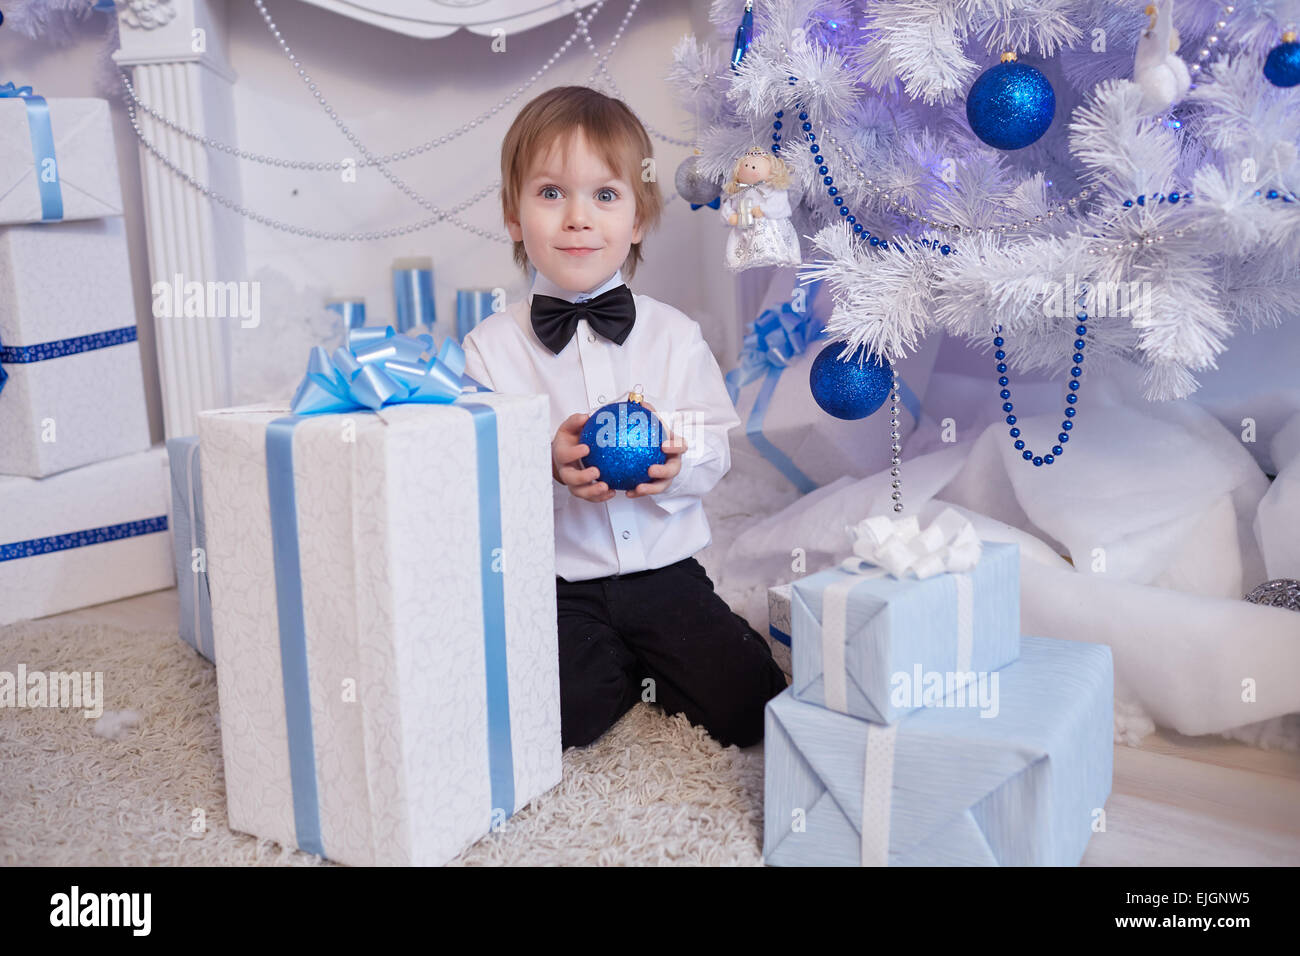 Boy fünf Jahre in Erwartung eines Geschenks, sitzt neben dem Weihnachtsbaum hält einen blauen Ballon Stockfoto